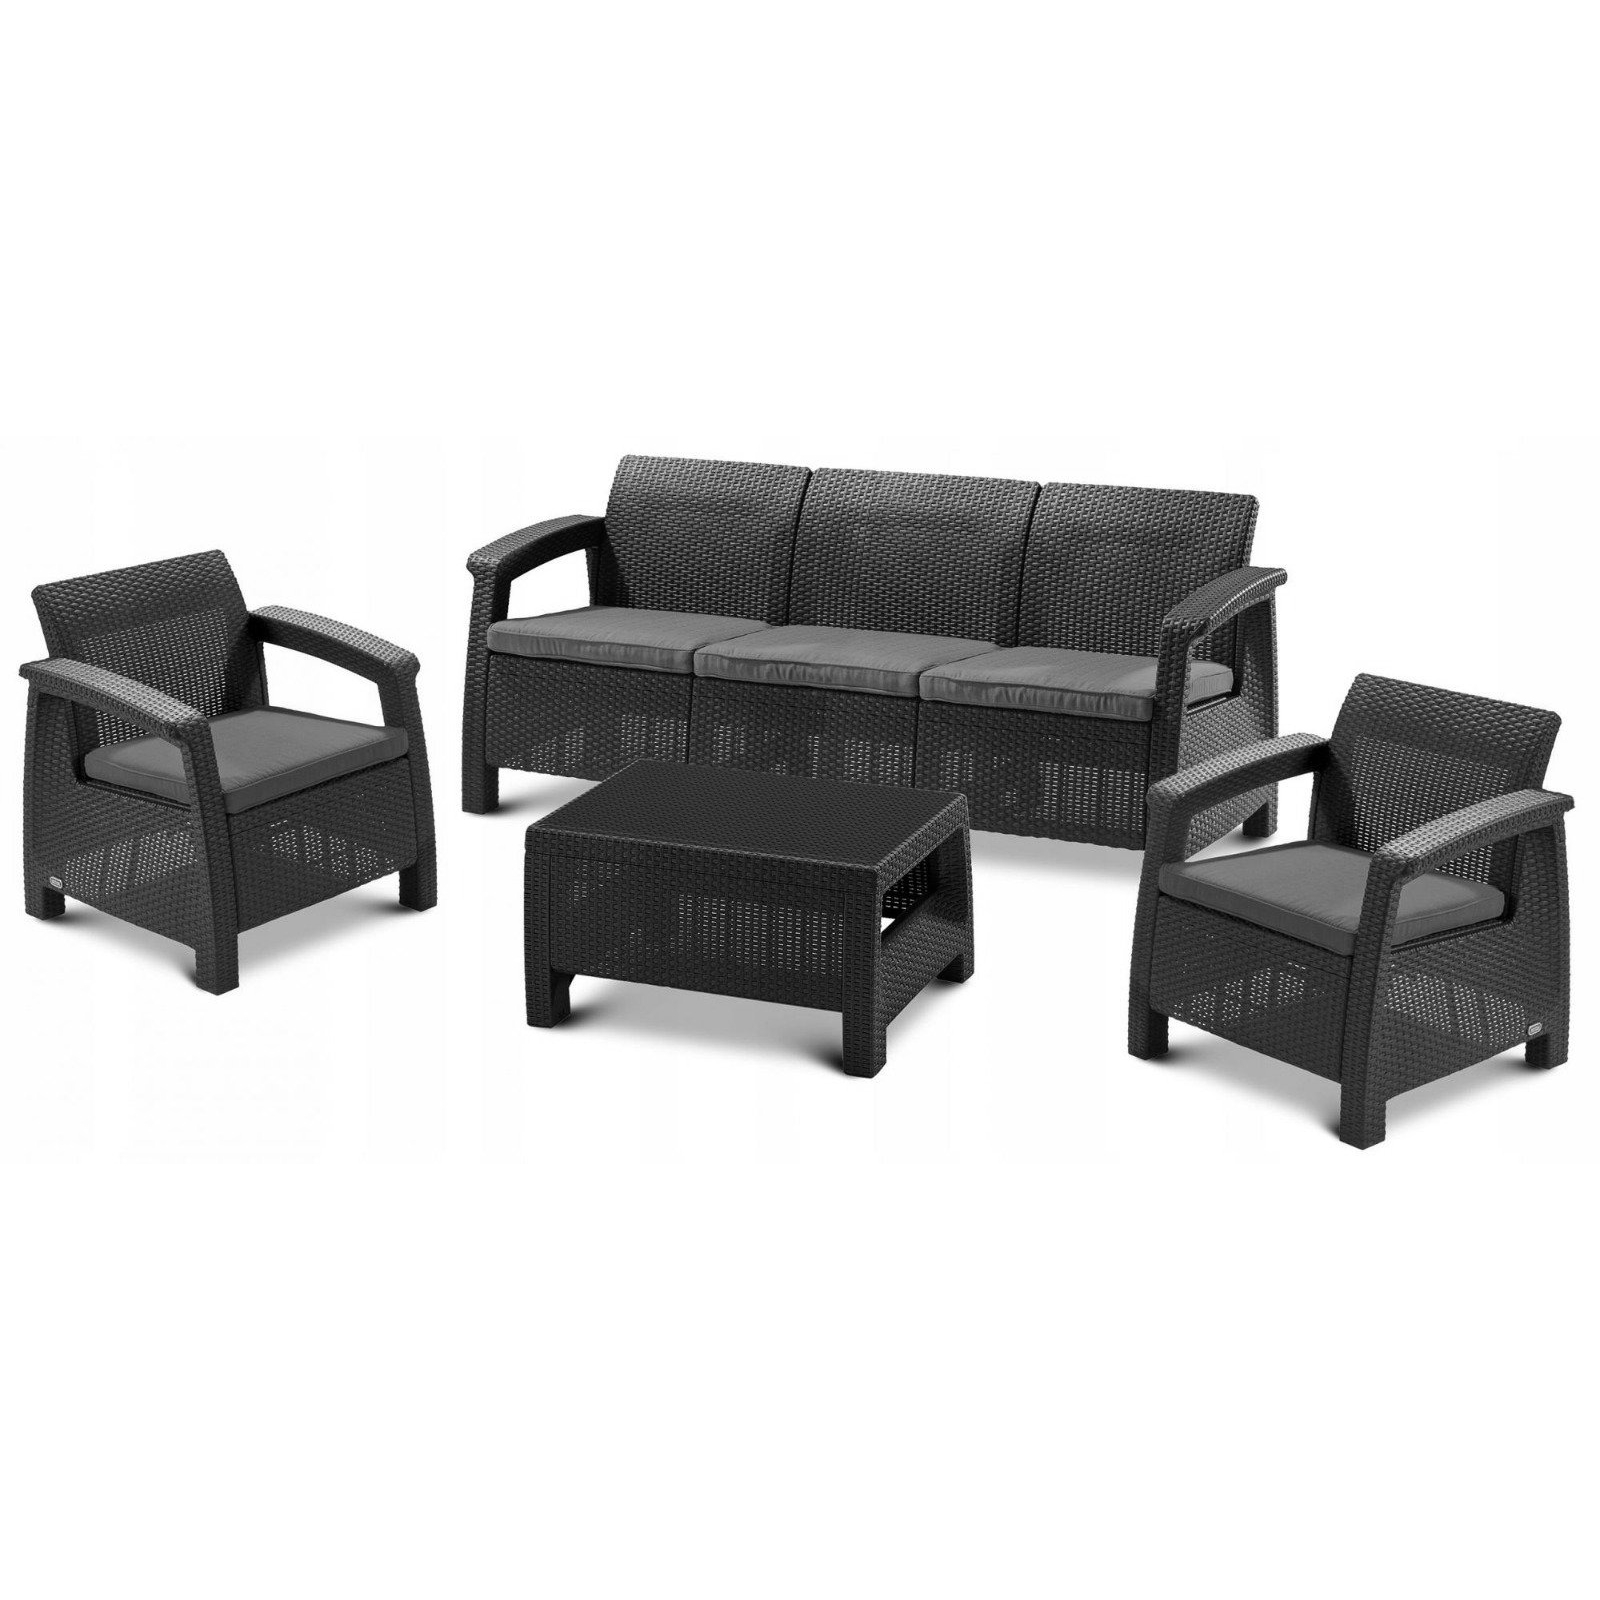 Набор мебели Heniver Novara темно-серый 4 предмета чехлы на подголовник бык черные набор 2 шт